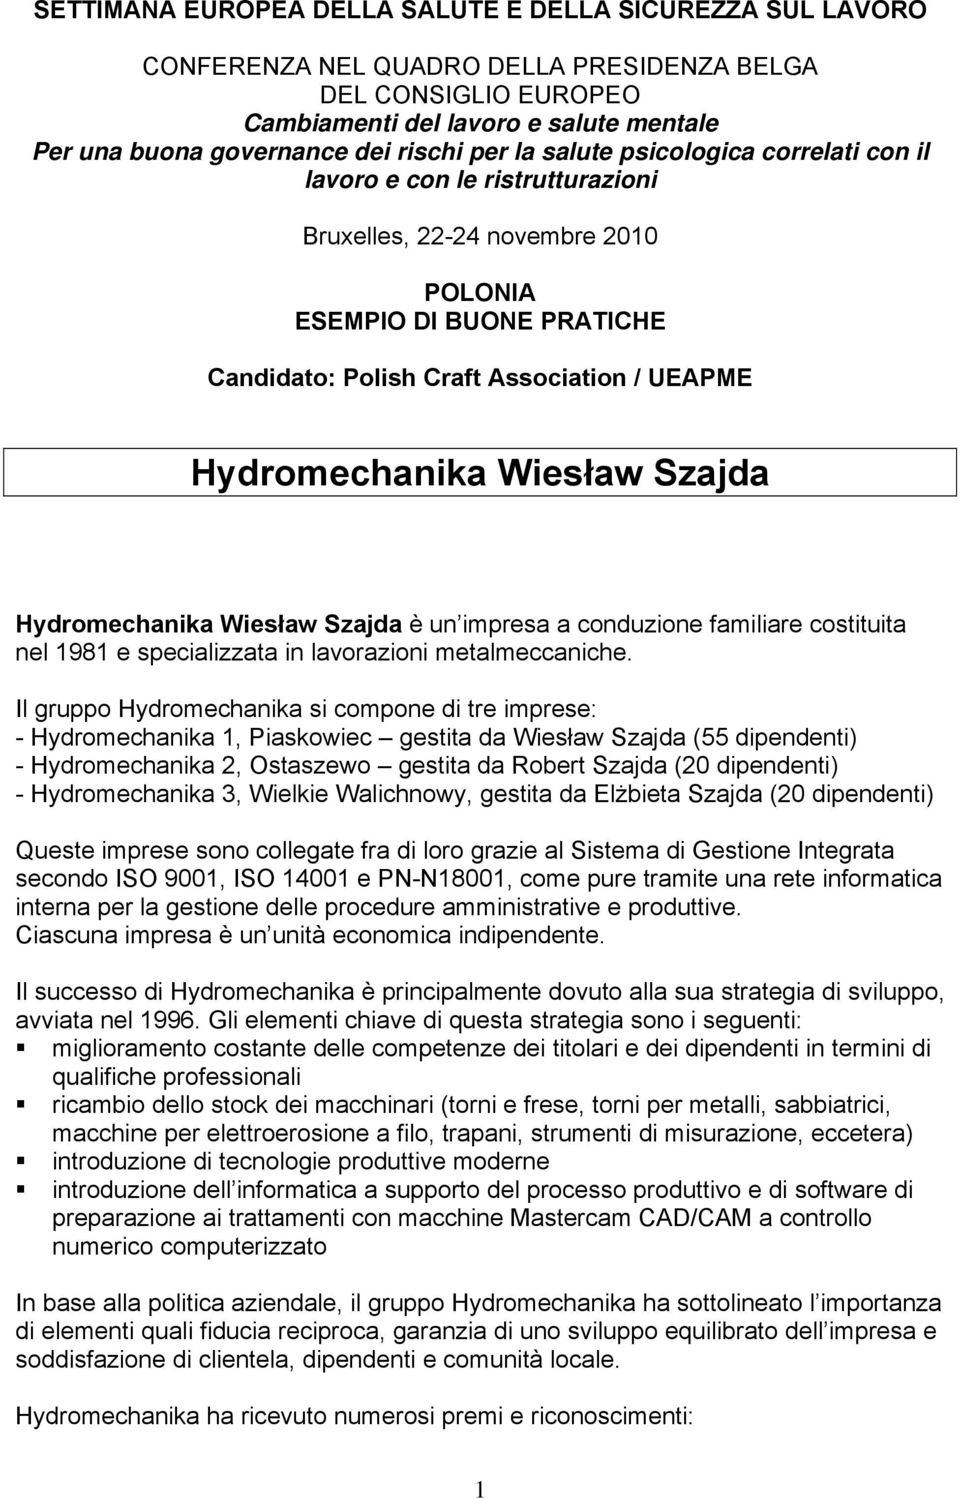 Hydromechanika Wiesław Szajda Hydromechanika Wiesław Szajda è un impresa a conduzione familiare costituita nel 1981 e specializzata in lavorazioni metalmeccaniche.